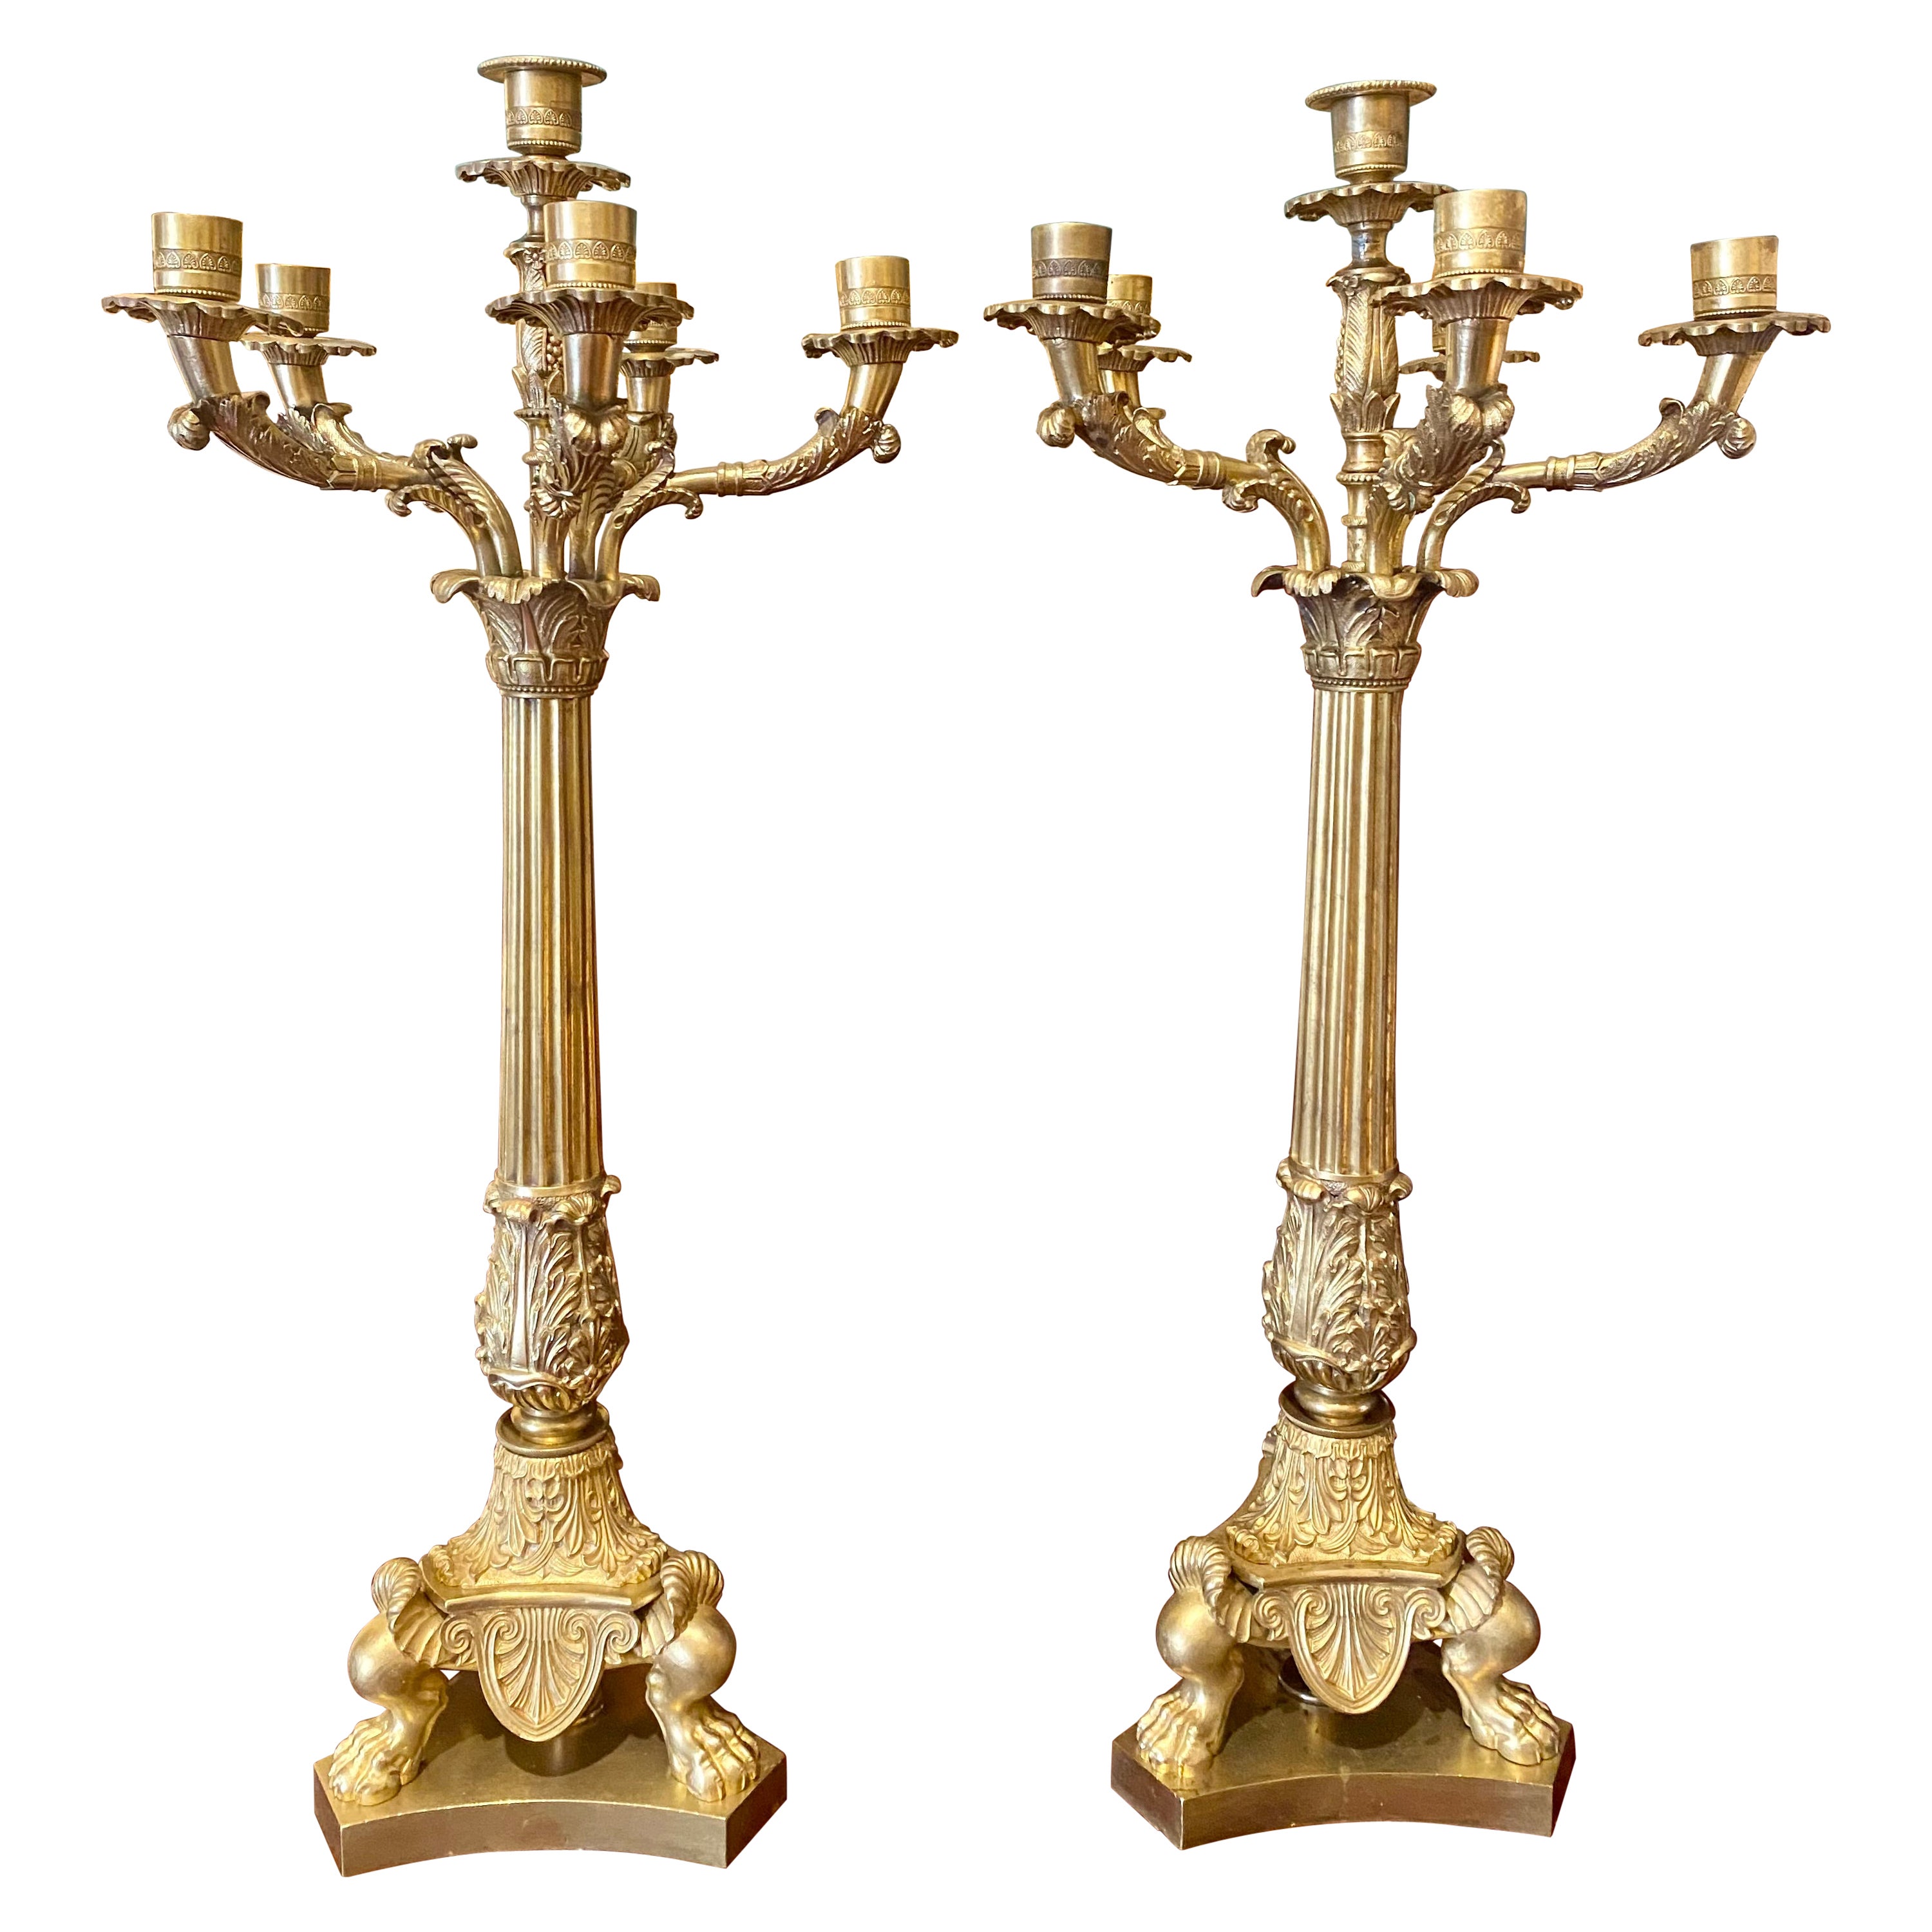 Paire de candélabres Empire français anciens en bronze doré, vers 1890-1900